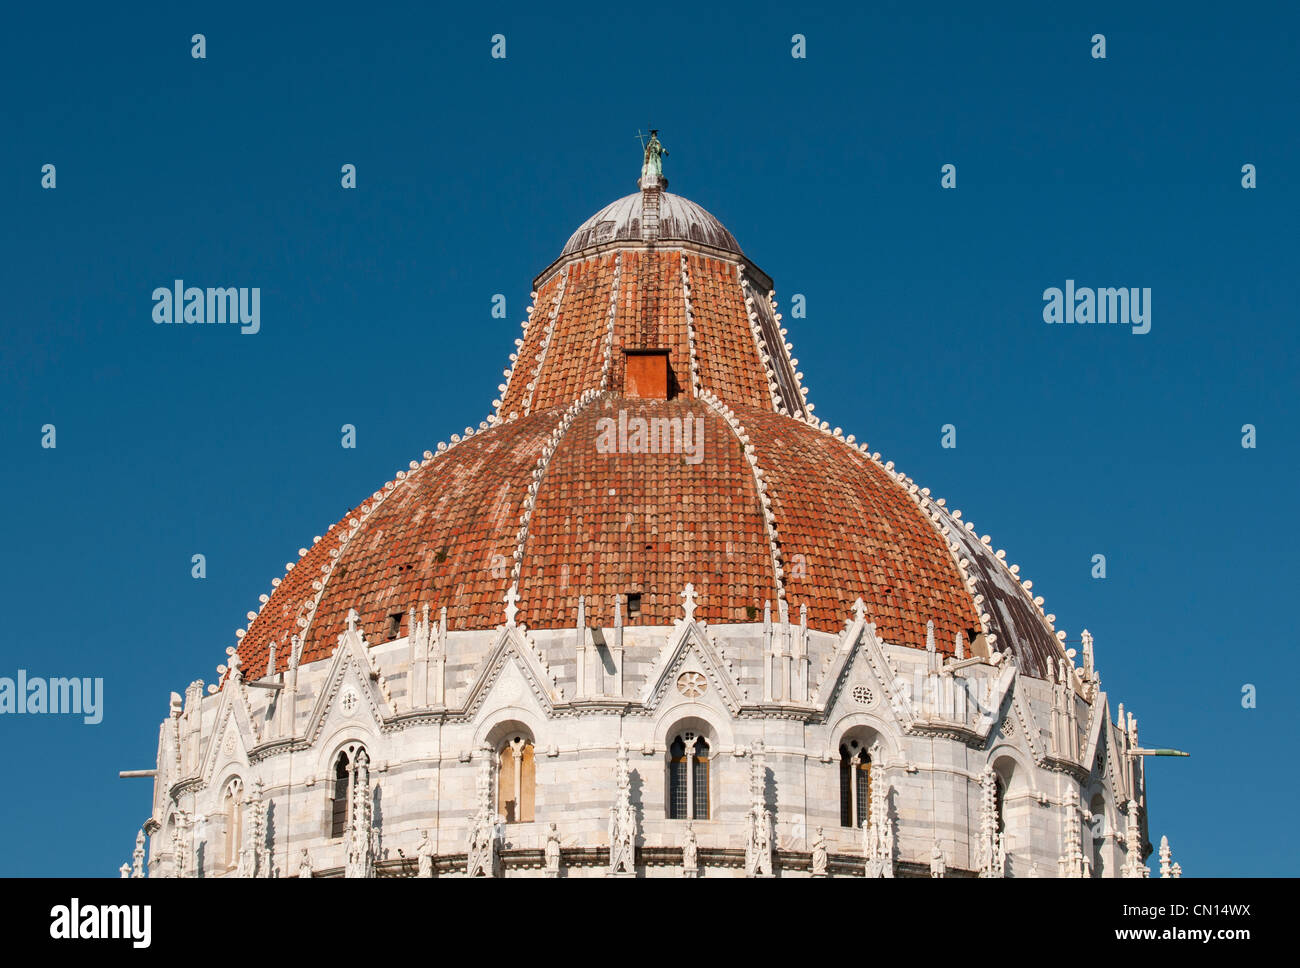 Baptistry of St. John (Battistero di San Giovanni), Pisa Cathedral, Toscana (Tuscany), Italy Stock Photo